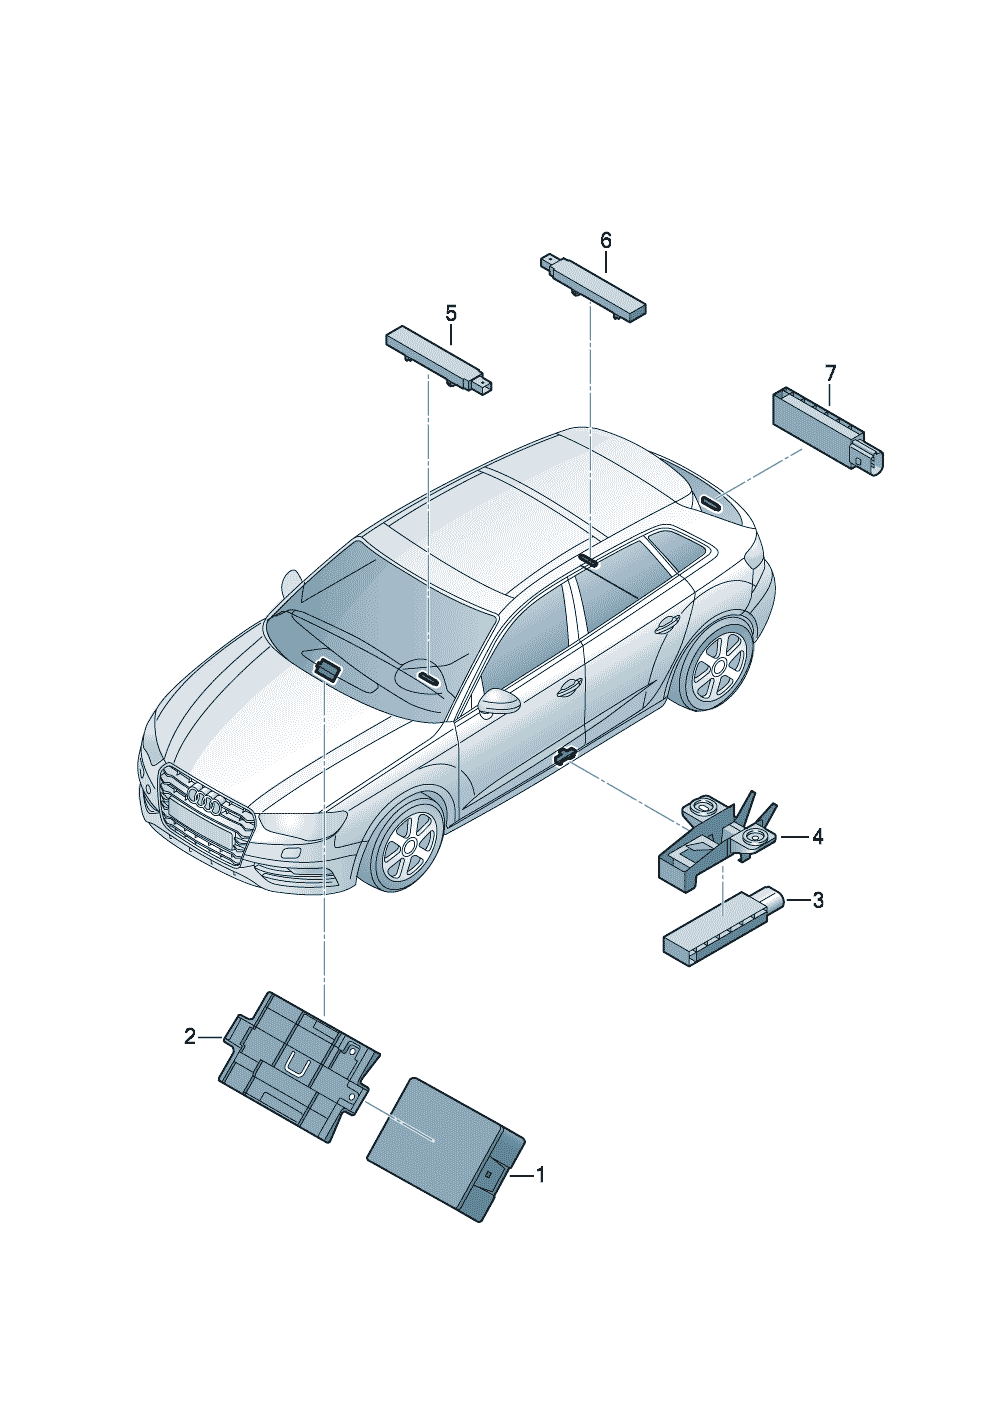 Giriş ve çalıştırma izni için<br>kontrol ünite         ET-Merk sayf. dik. alGiriş ve çalıştırma yetkisi<br>anteni (KESSY)  (0-223) - Audi A3/S3/Sportb./Lim./qu. - a3